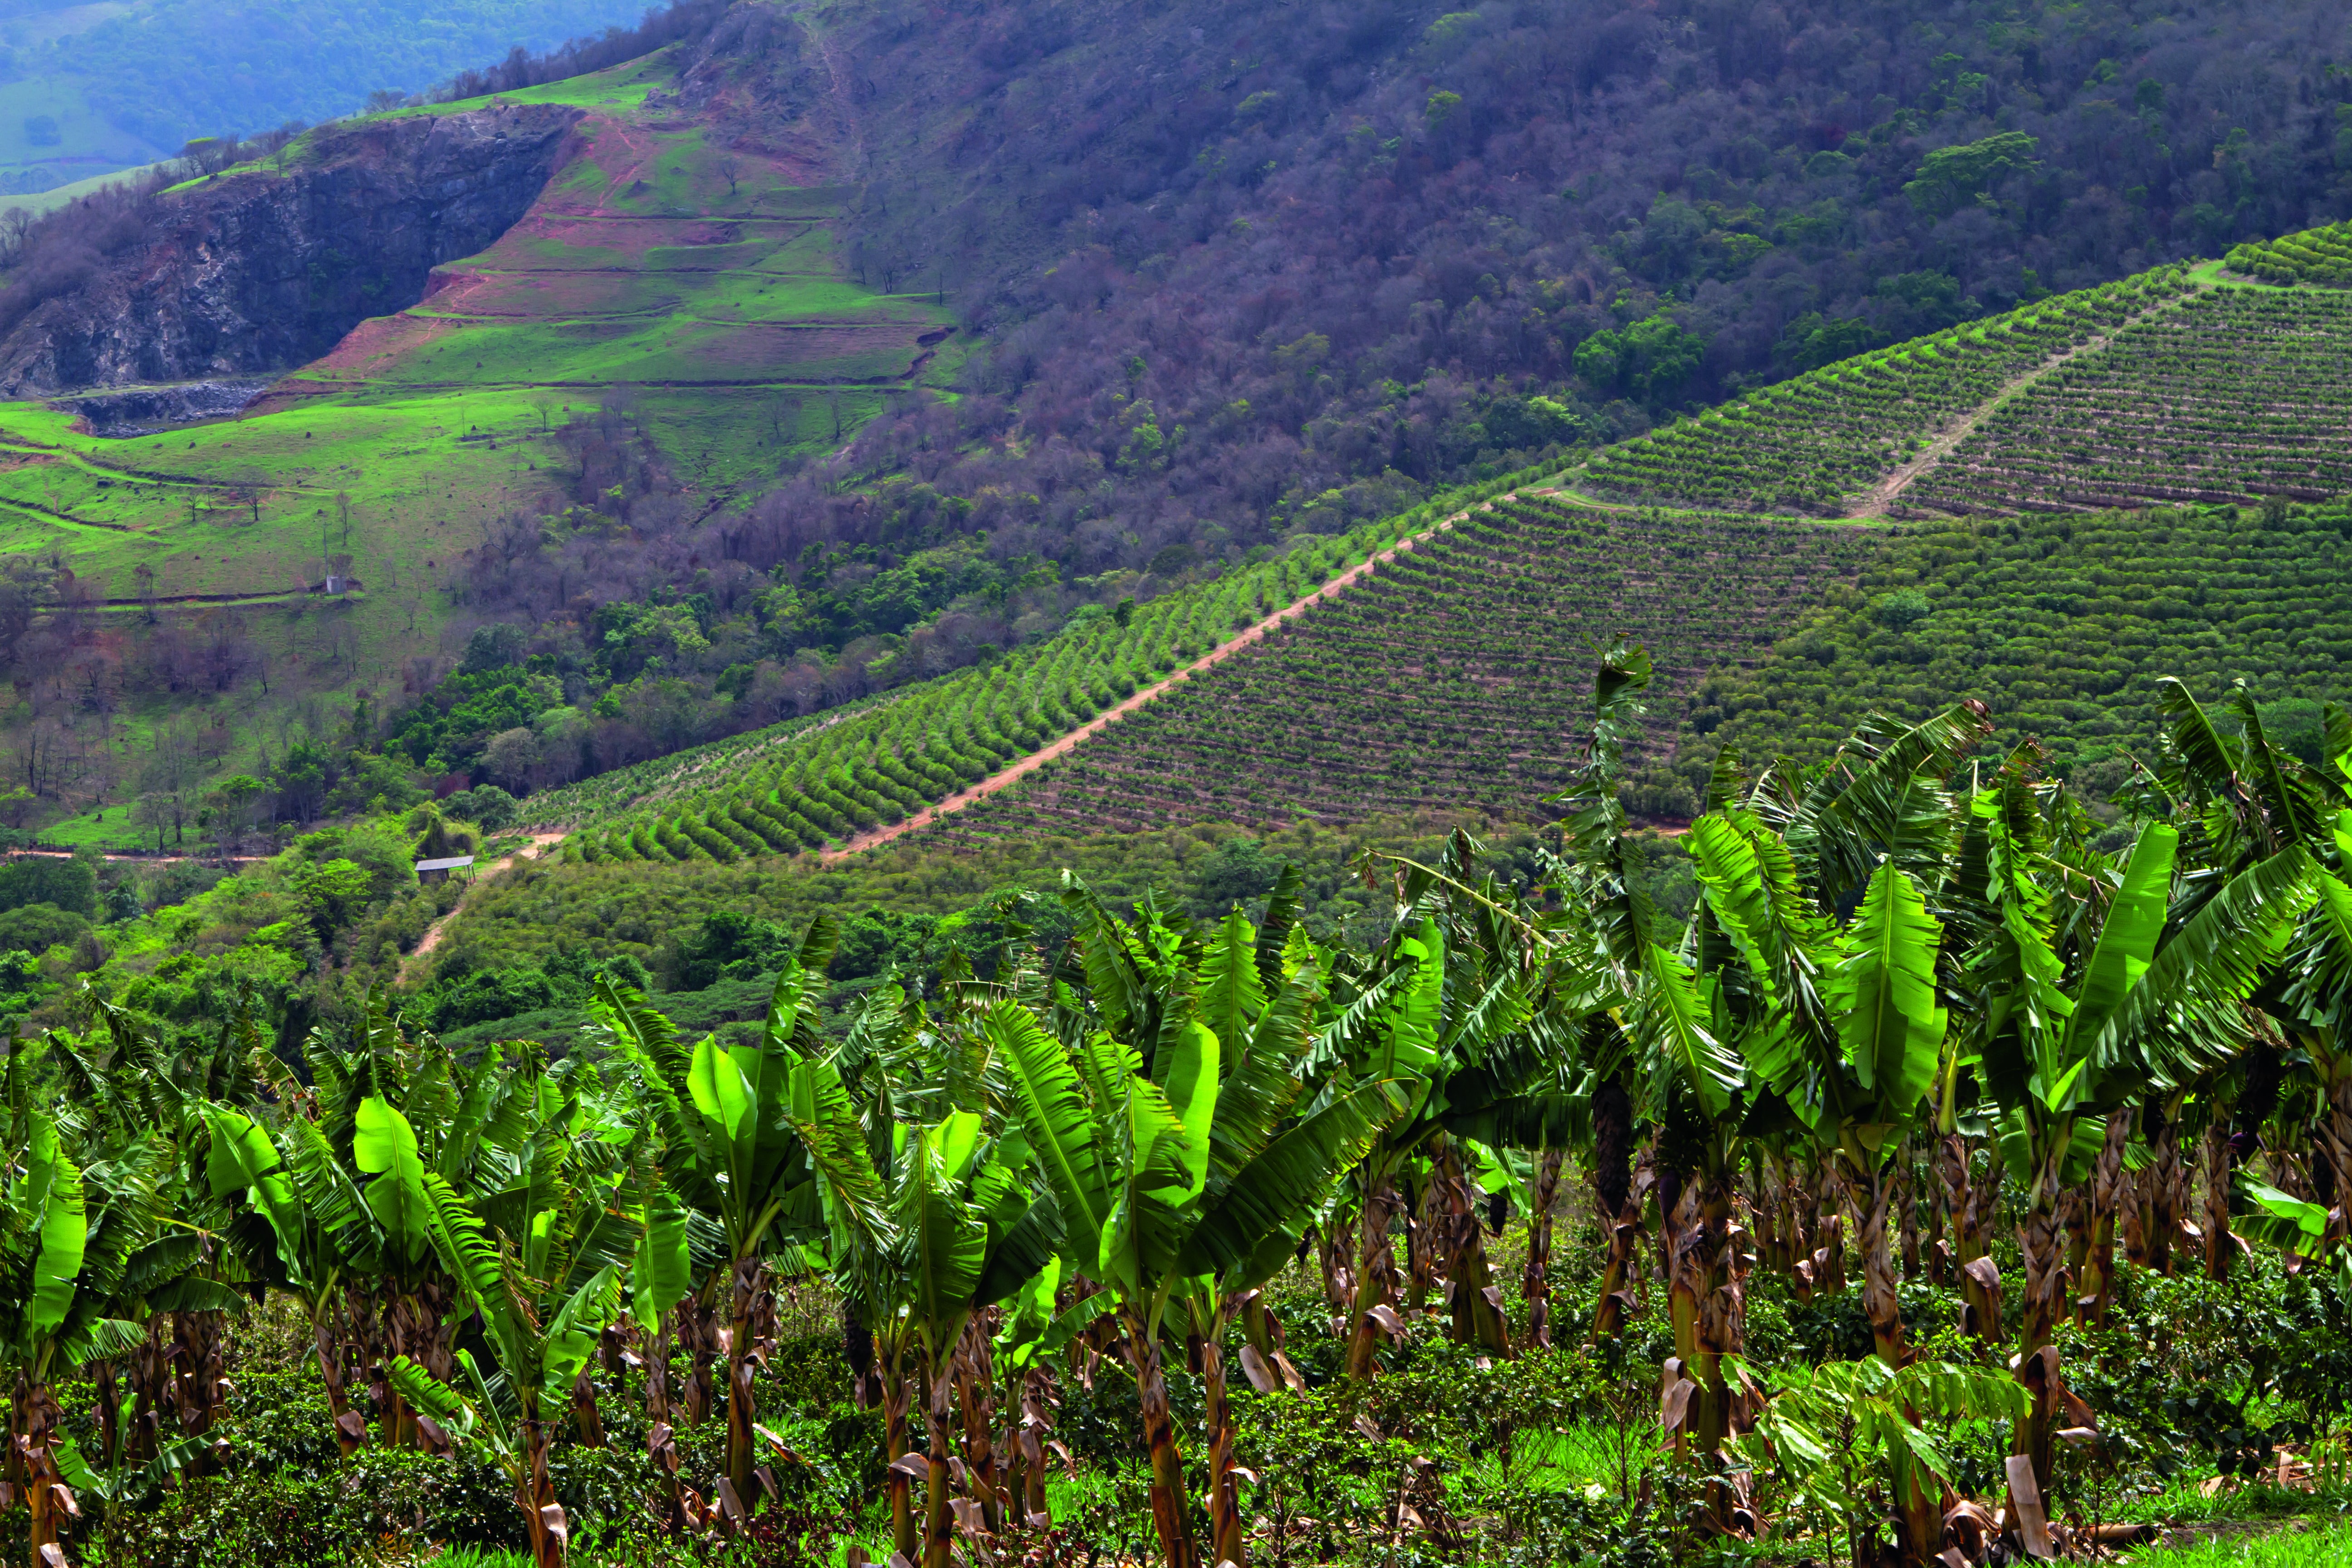 Produtor mineiro aposta na agricultura regenerativa e recupera antiga área de pastagem degradada com cultivo de banana, abacate e mogno em meio aos cafezais. (Foto: Rogerio Albuquerque)